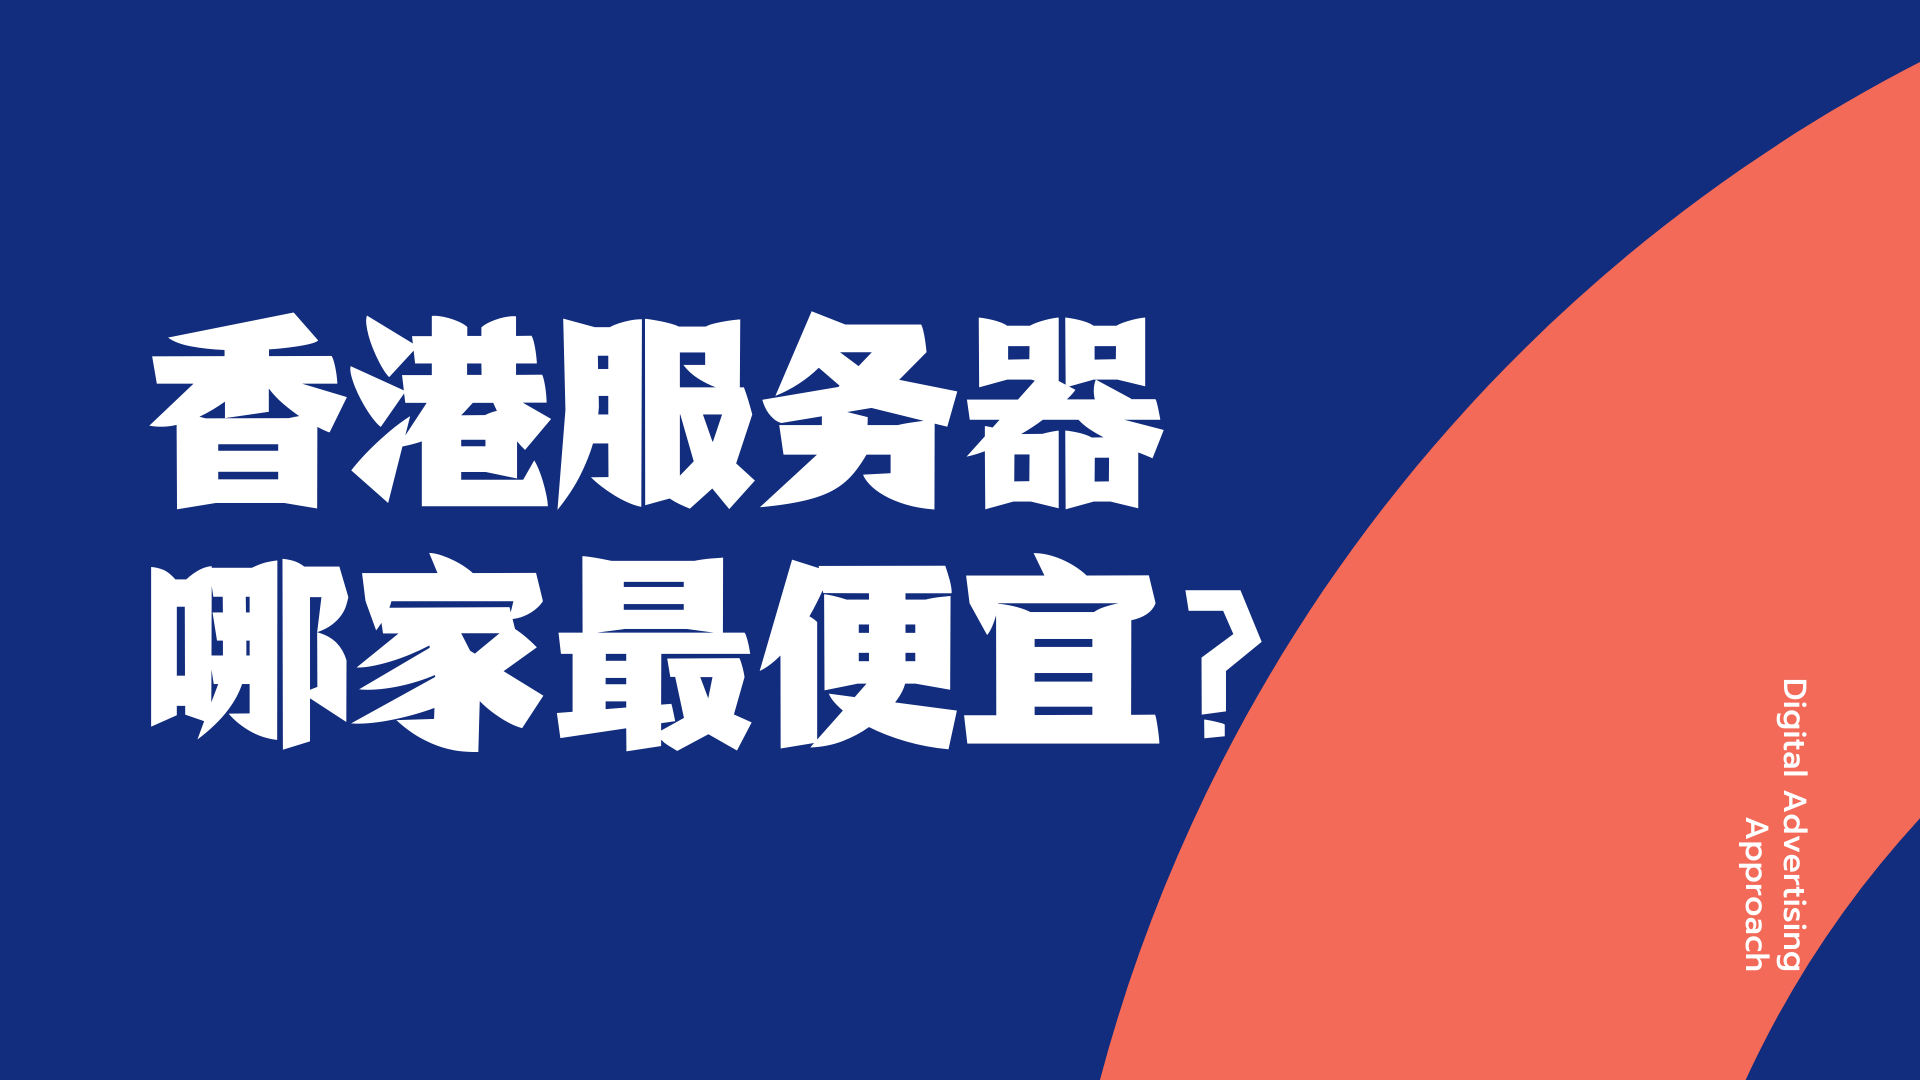 蓝橙色撞色设计潮流时尚炫酷几何企业宣传中文演示文稿.png